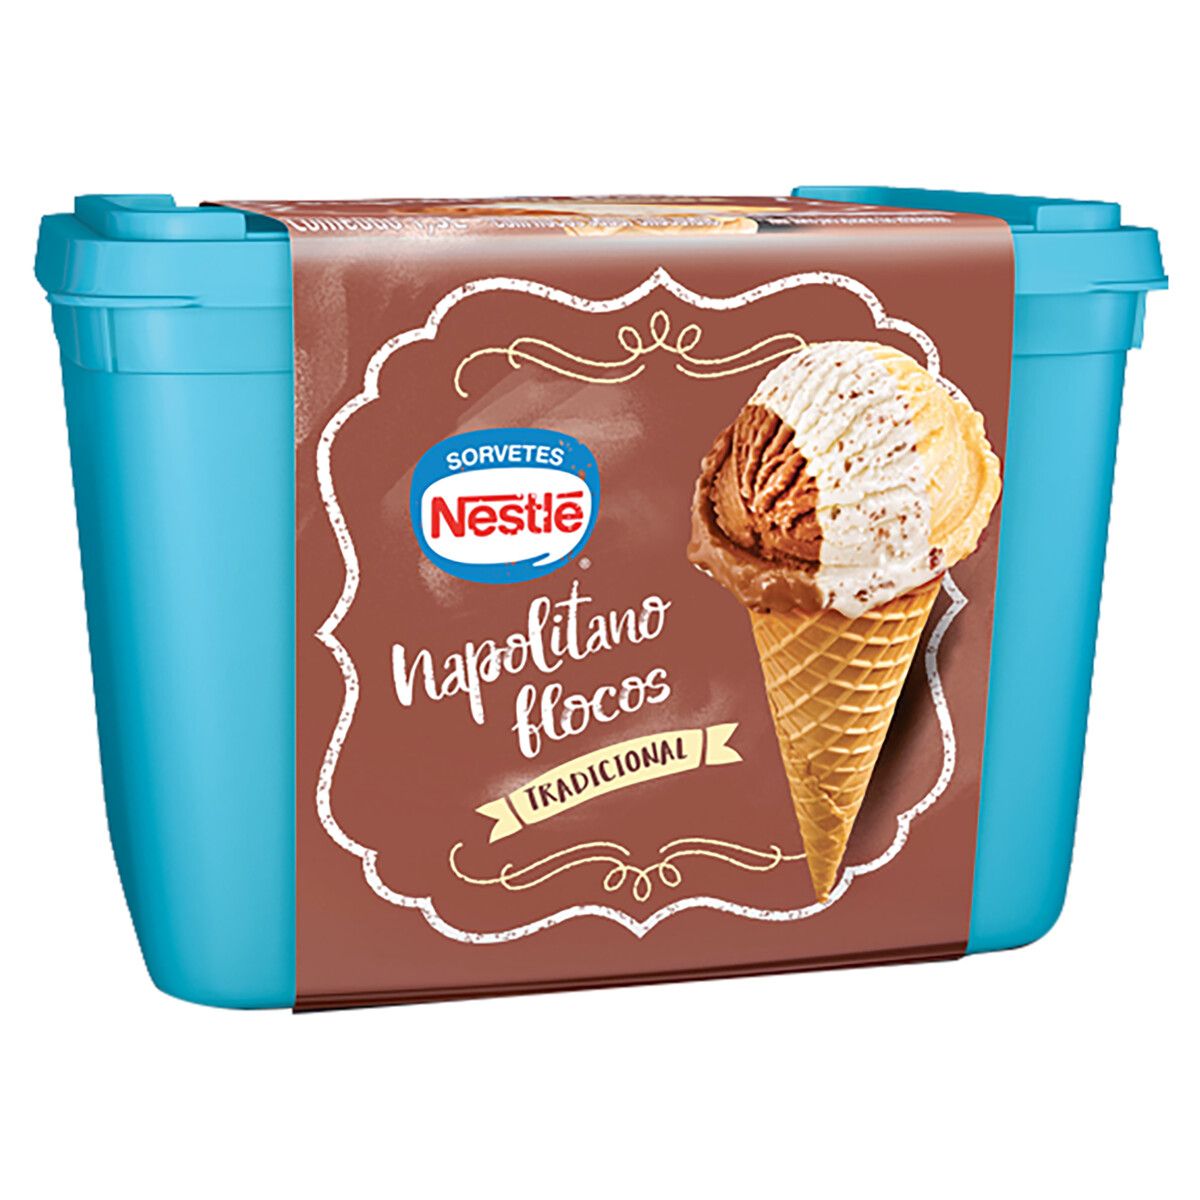 Sorvete Napolitano Flocos Tradicional Nestlé Pote 1,5L